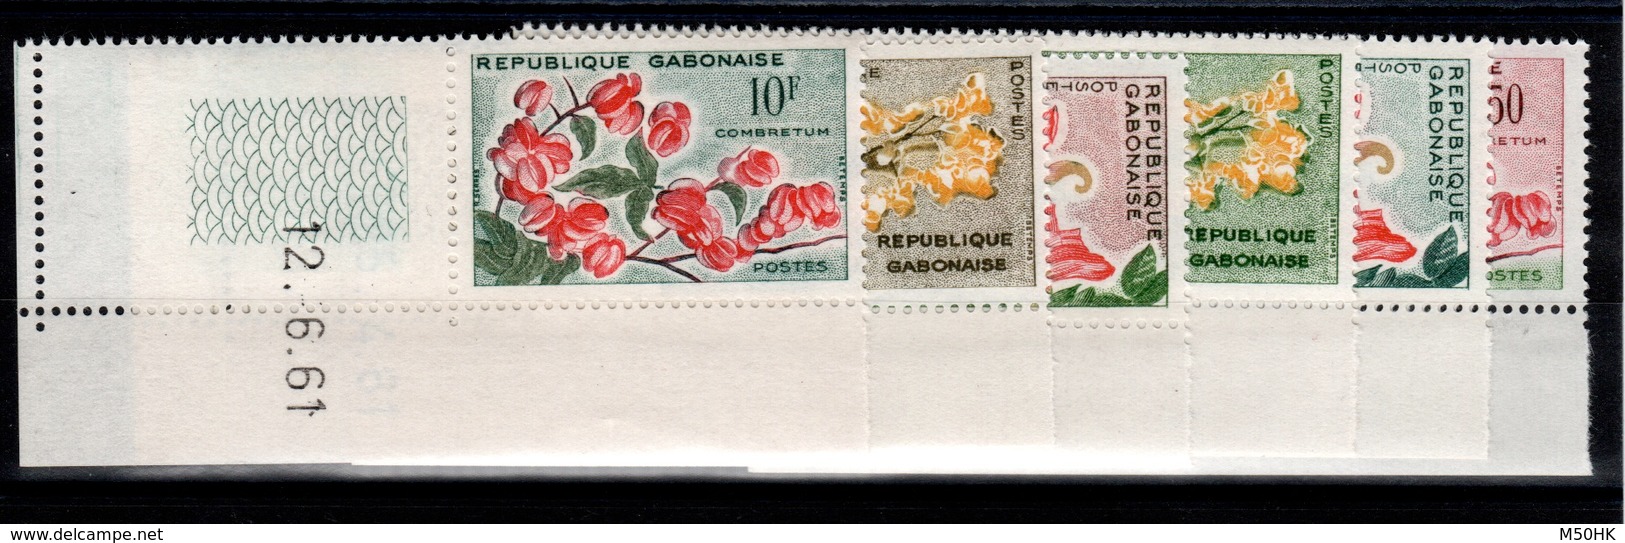 Gabon - YV 153 à 158 N** Petit Coin Daté - Fleurs - Gabon (1960-...)